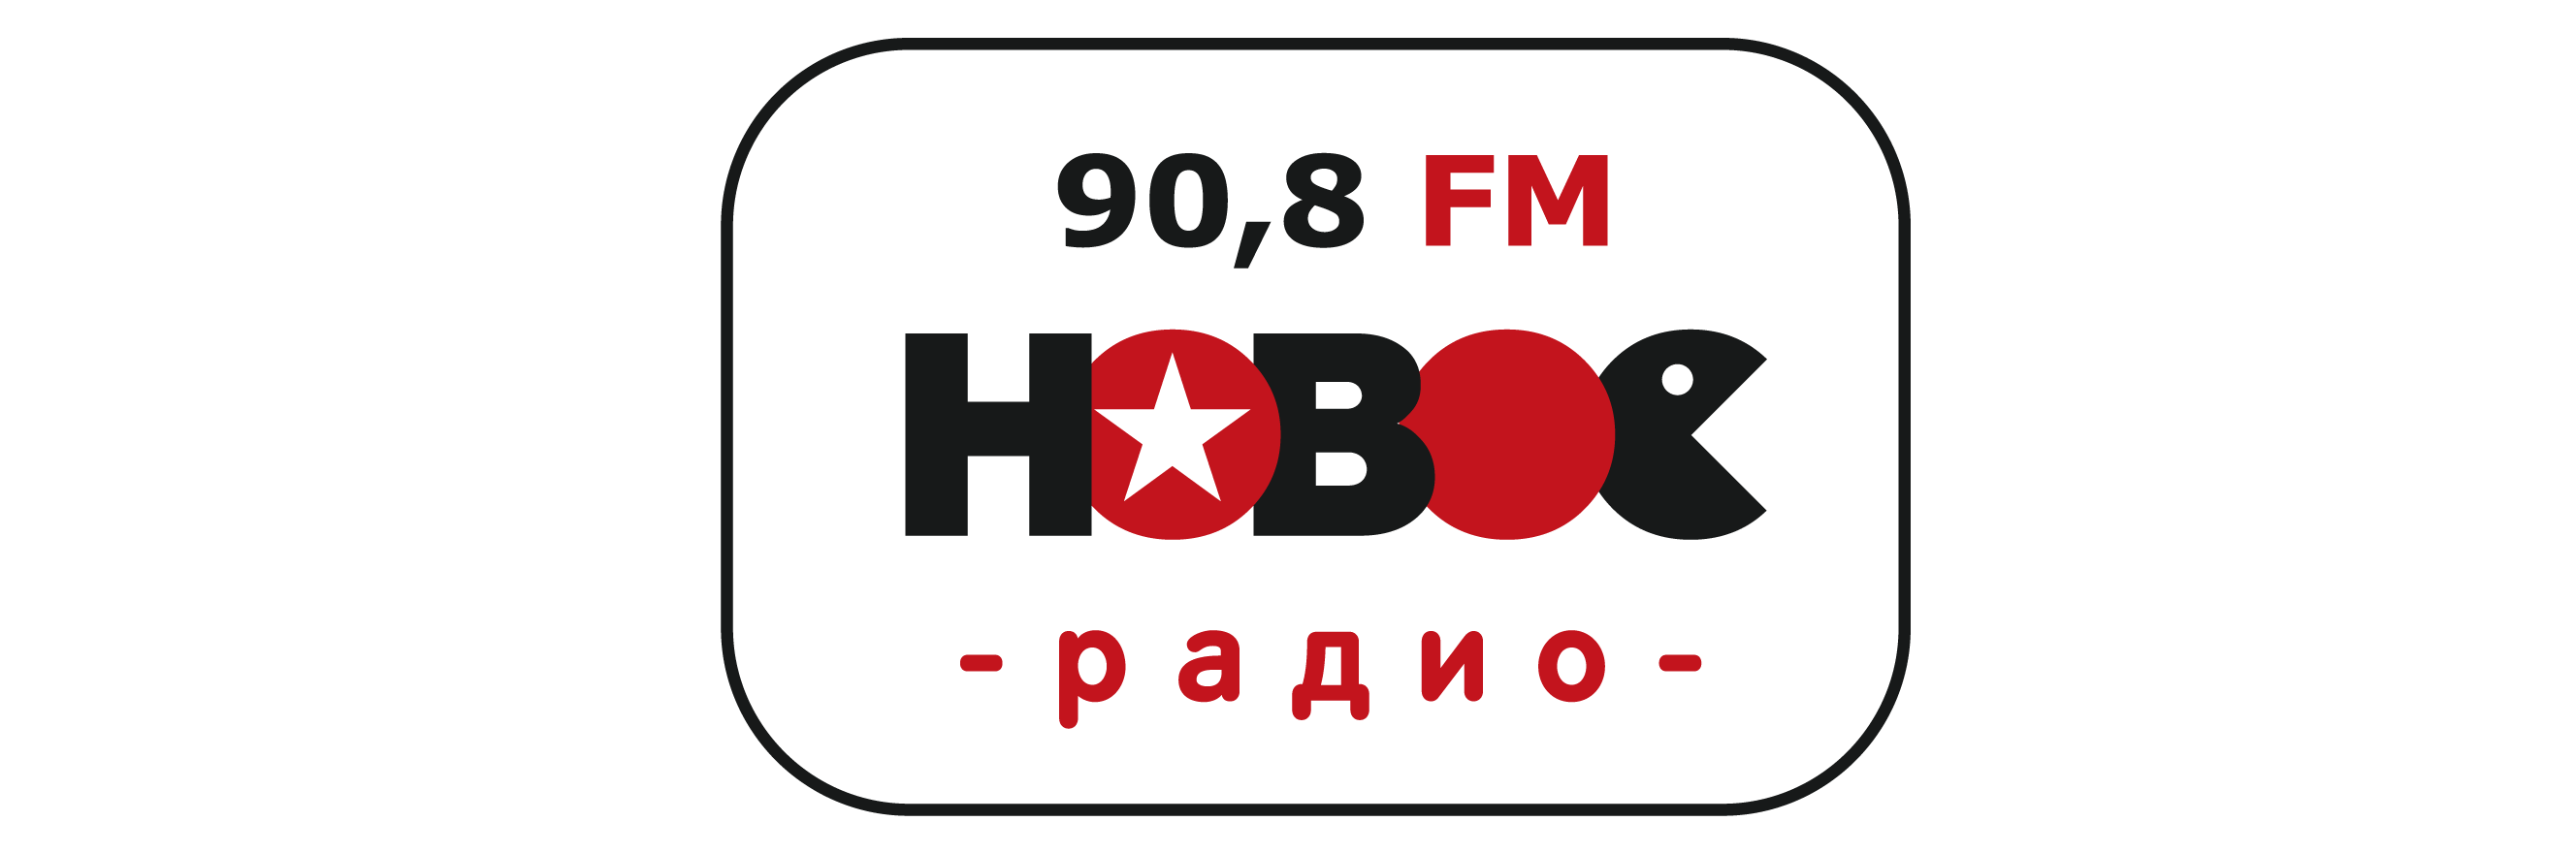 Радио фм 9. Новое радио. Новое радио ФМ. Логотипы радиостанций. Логотип станции новое радио.